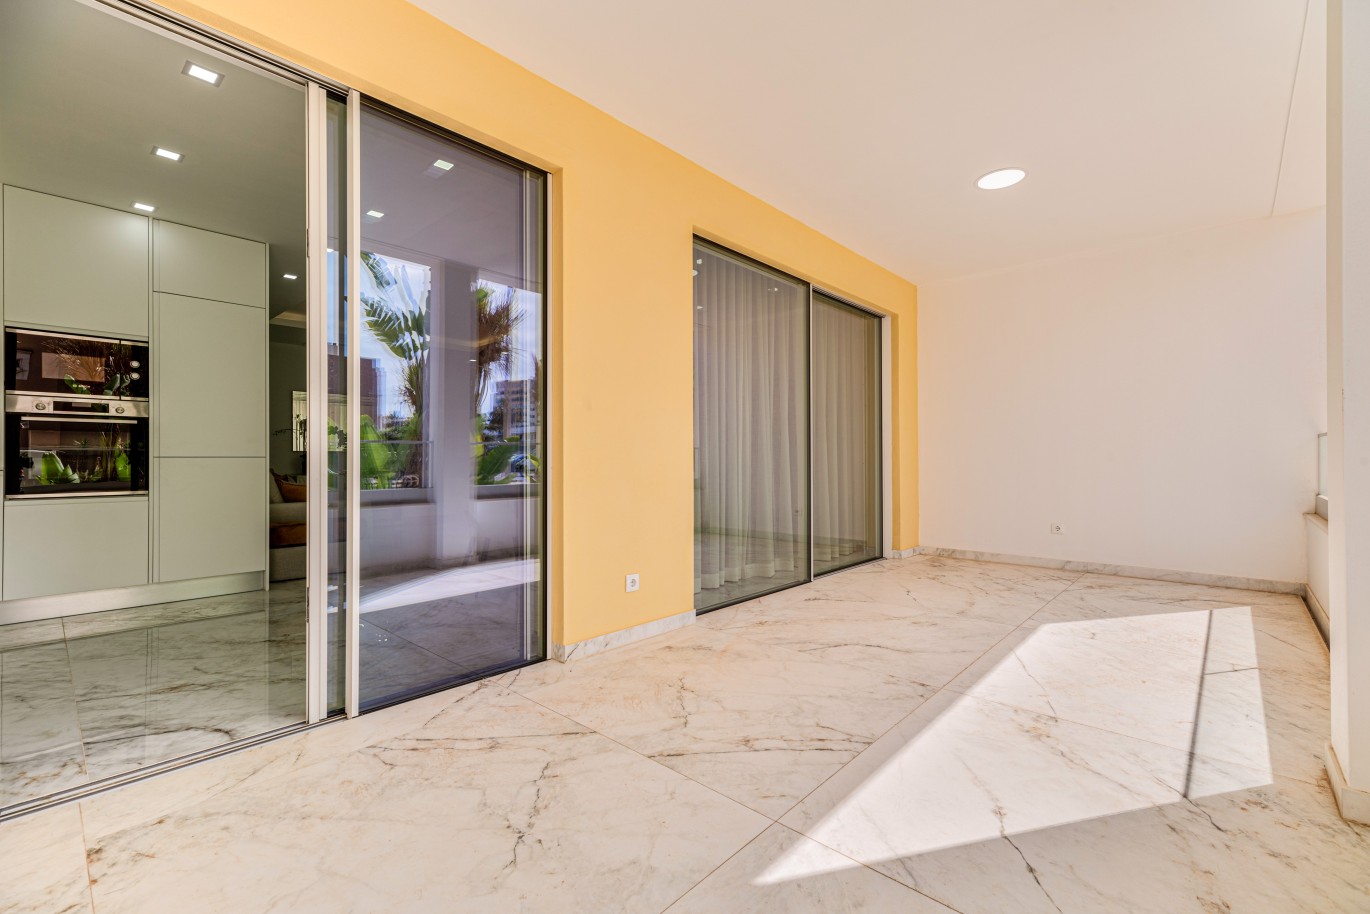 Verkauf einer Wohnung im Bau, mit Terrasse, Lagos, Algarve, Portugal_238376